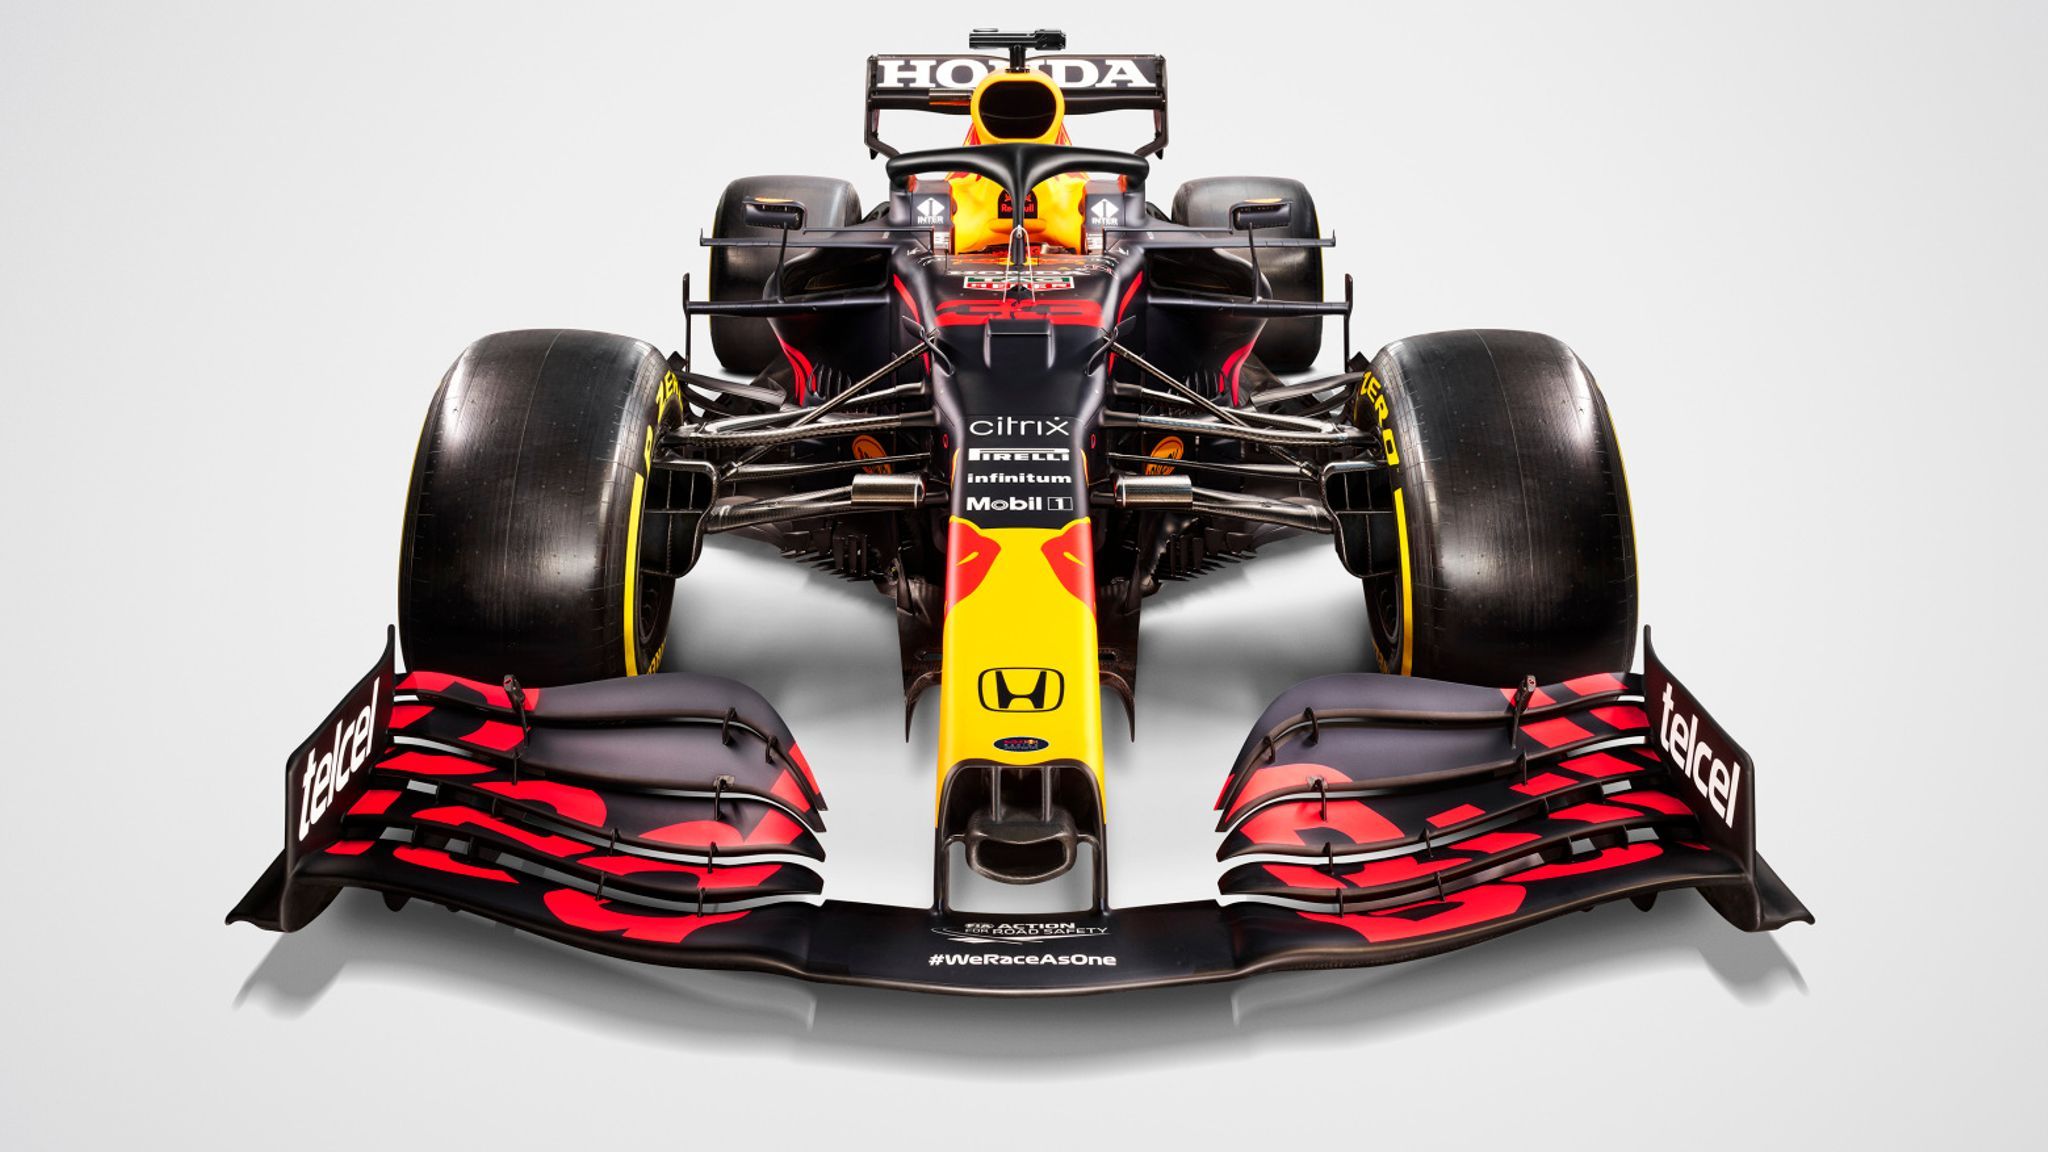 Red Bull launch 2021 car, the RB16B, as team bid to end Mercedes' Formula 1 title streak